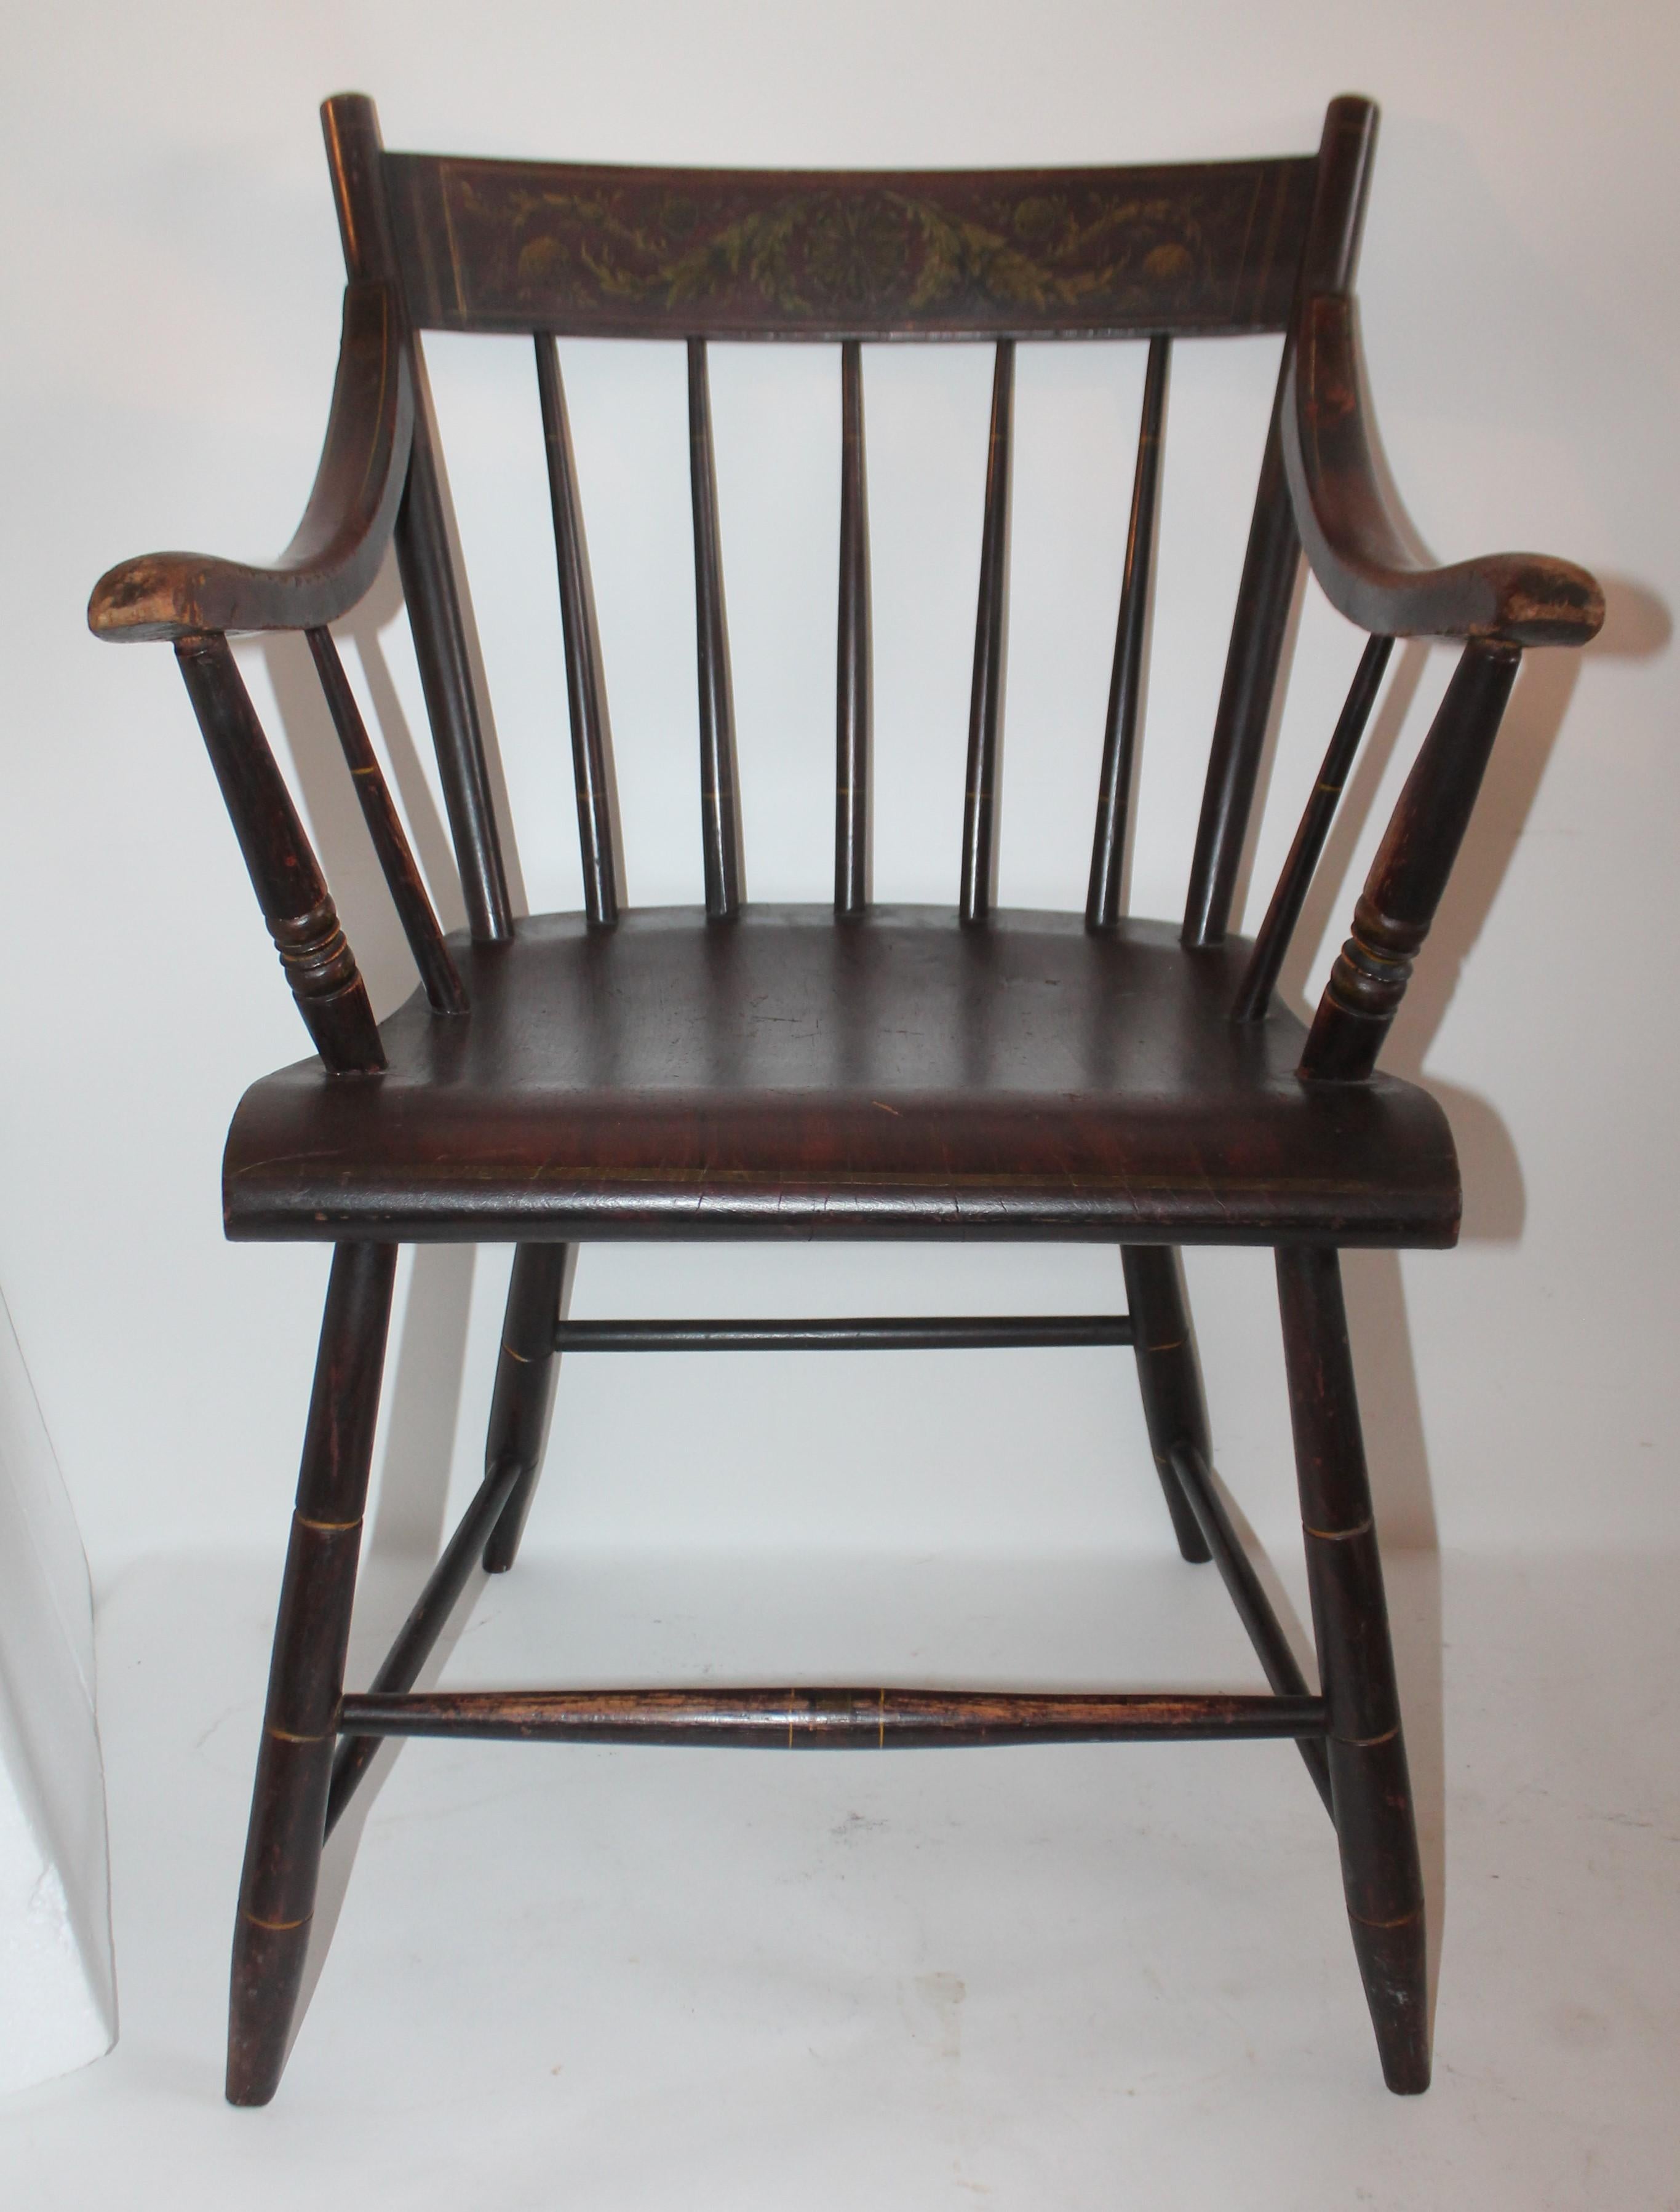 Original bemalter Hitchcock-Sessel aus dem frühen 19. Jahrhundert mit einer verzierten Innenlehne. Der Zustand ist sehr gut und solide. Der Hintergrund hat eine wunderschöne rötlich-braune Oberfläche. Die Farbe ist in einer ungestörten Patina.